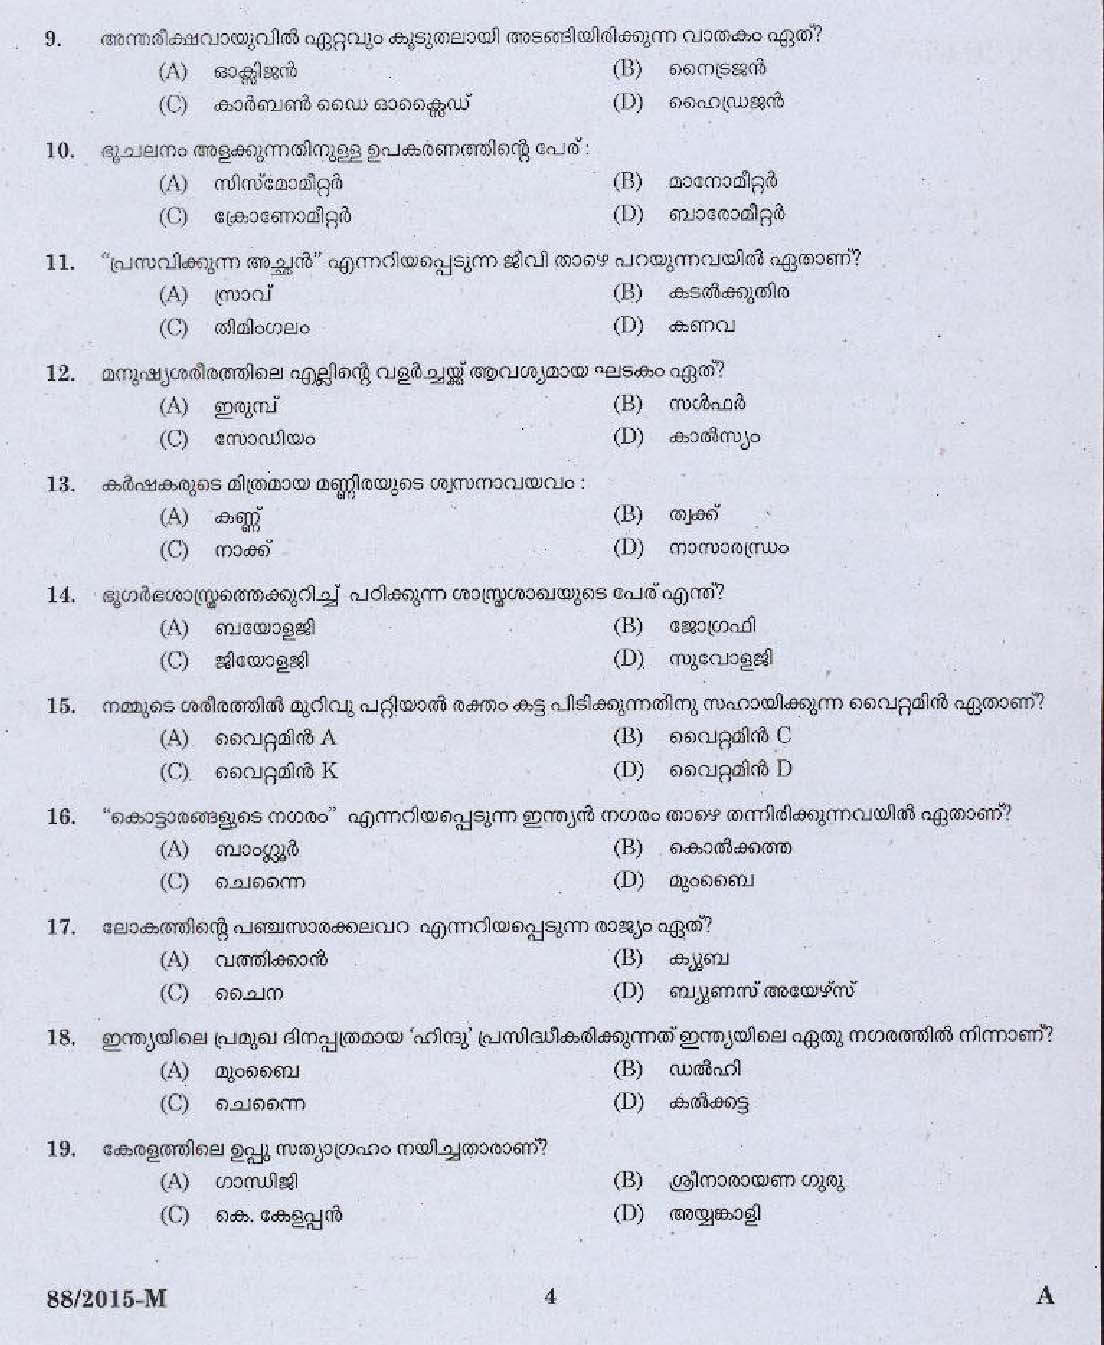 Kerala PSC Driver Grade II Exam 2015 Question Paper Code 882015 M 2